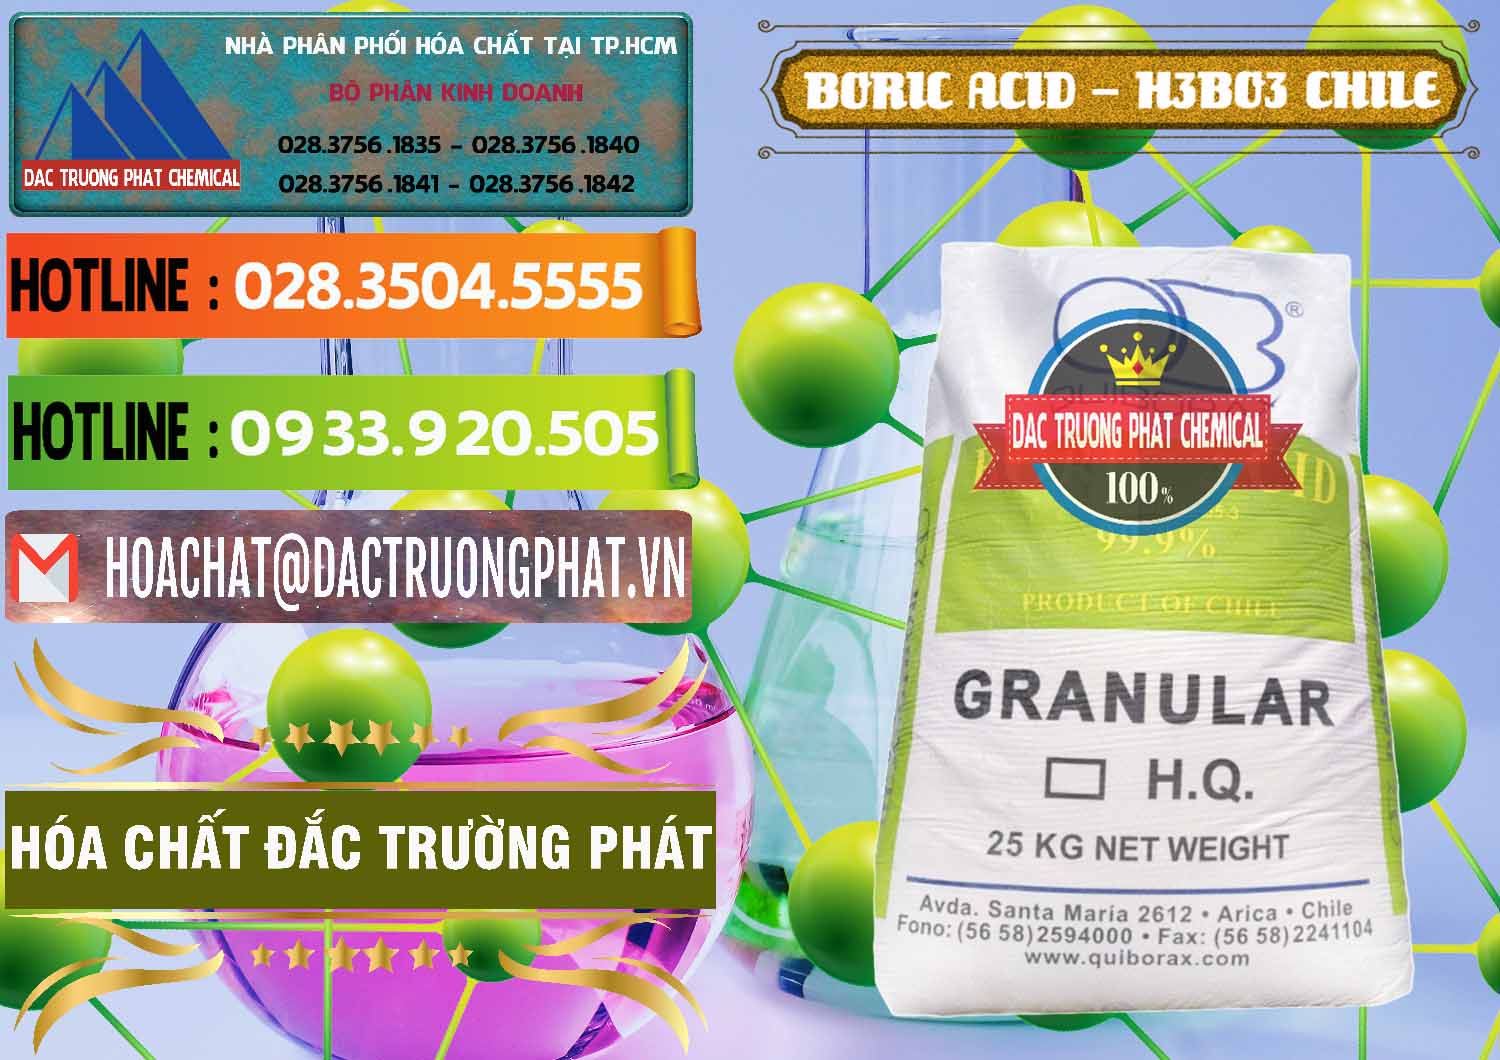 Chuyên bán _ phân phối Acid Boric – Axit Boric H3BO3 99% Quiborax Chile - 0281 - Nơi chuyên bán _ phân phối hóa chất tại TP.HCM - cungcaphoachat.com.vn